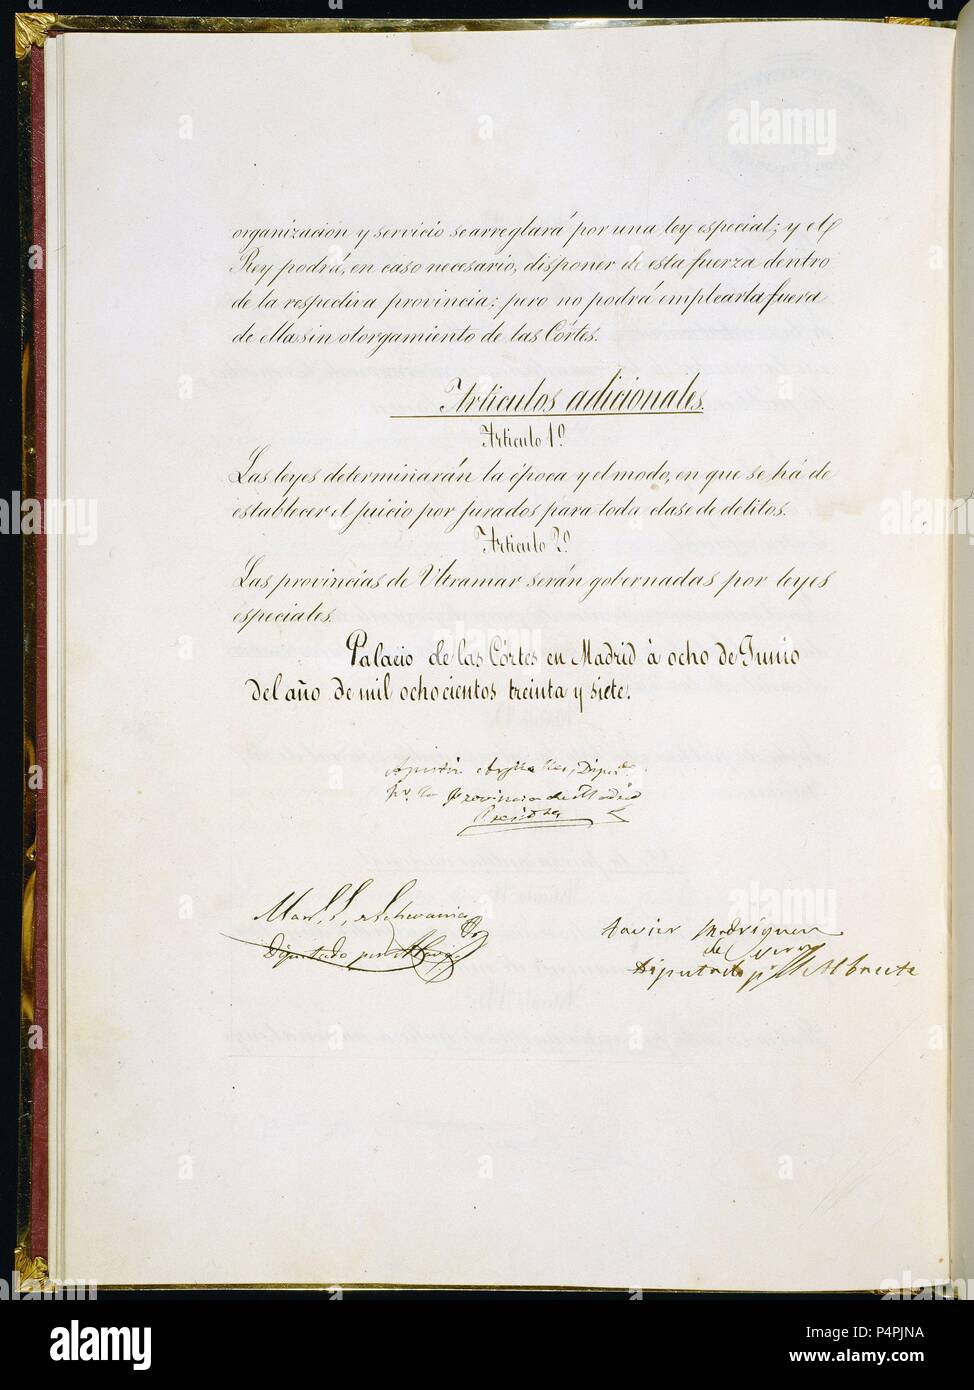 CONSTITUCION DE 1837-ARTICULOS ADICIONALES 8/6/1837. Location: CONGRESO DE LOS DIPUTADOS-BIBLIOTECA, MADRID, SPAIN. Stock Photo